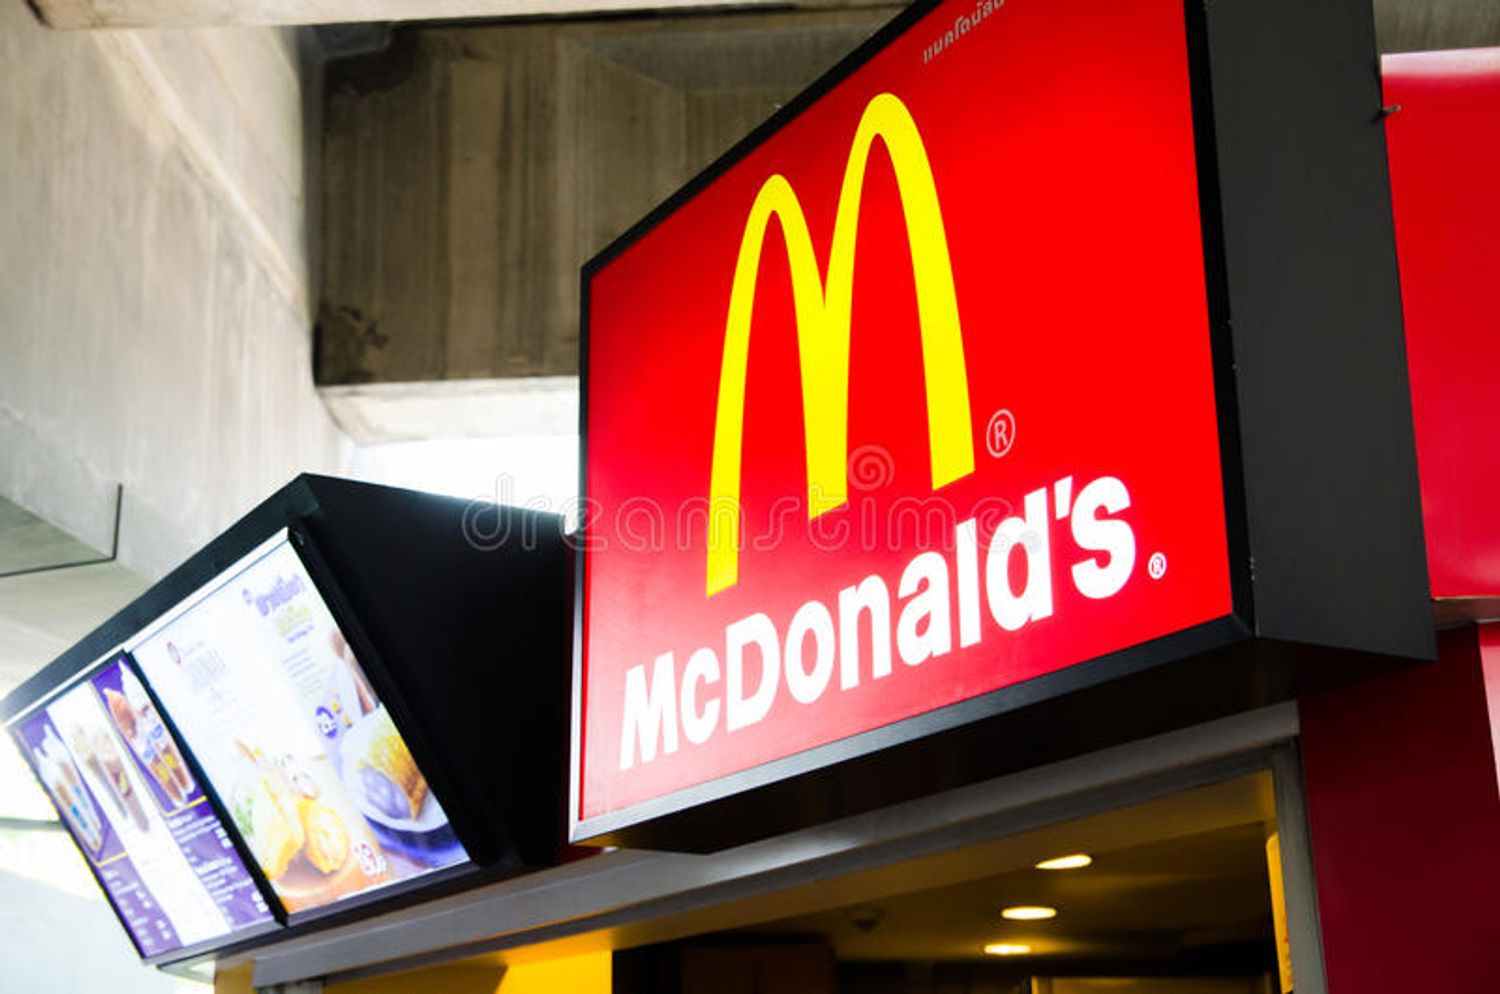 Que Choisir porte plainte contre McDonald’s France